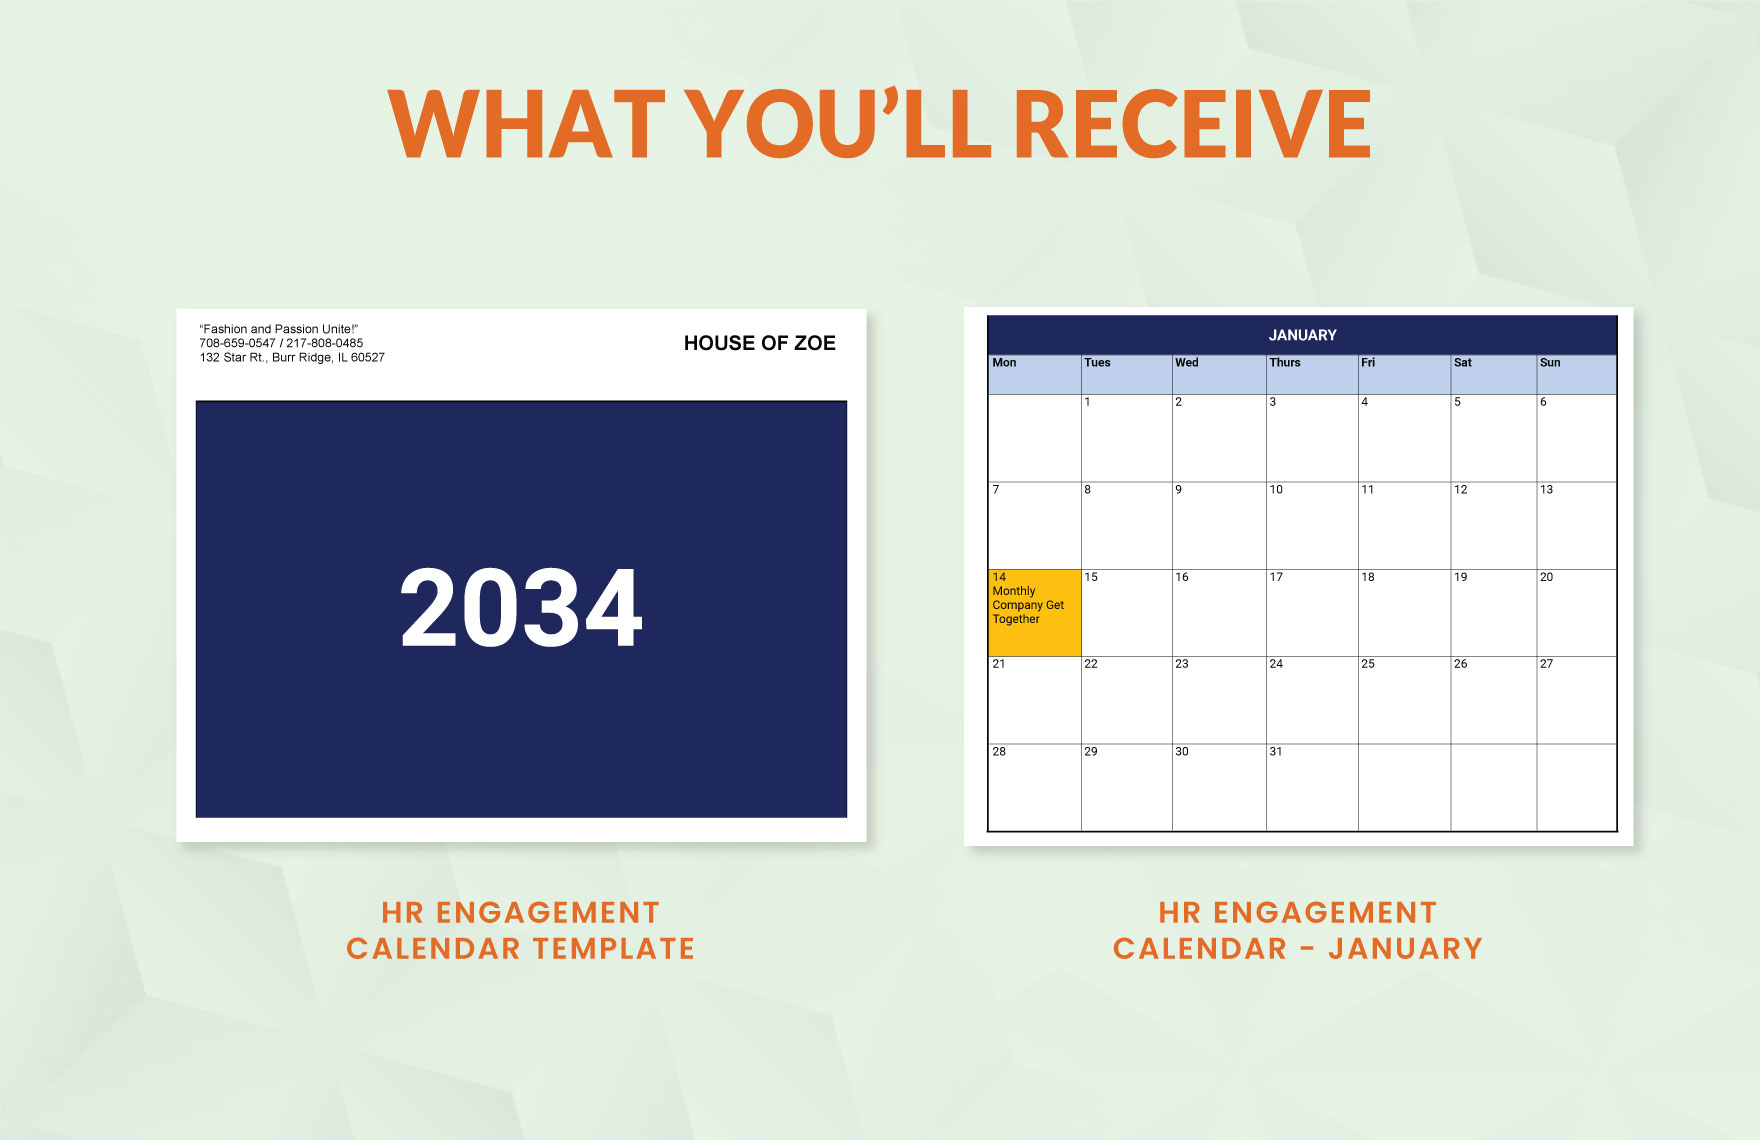 HR Engagement Calendar template